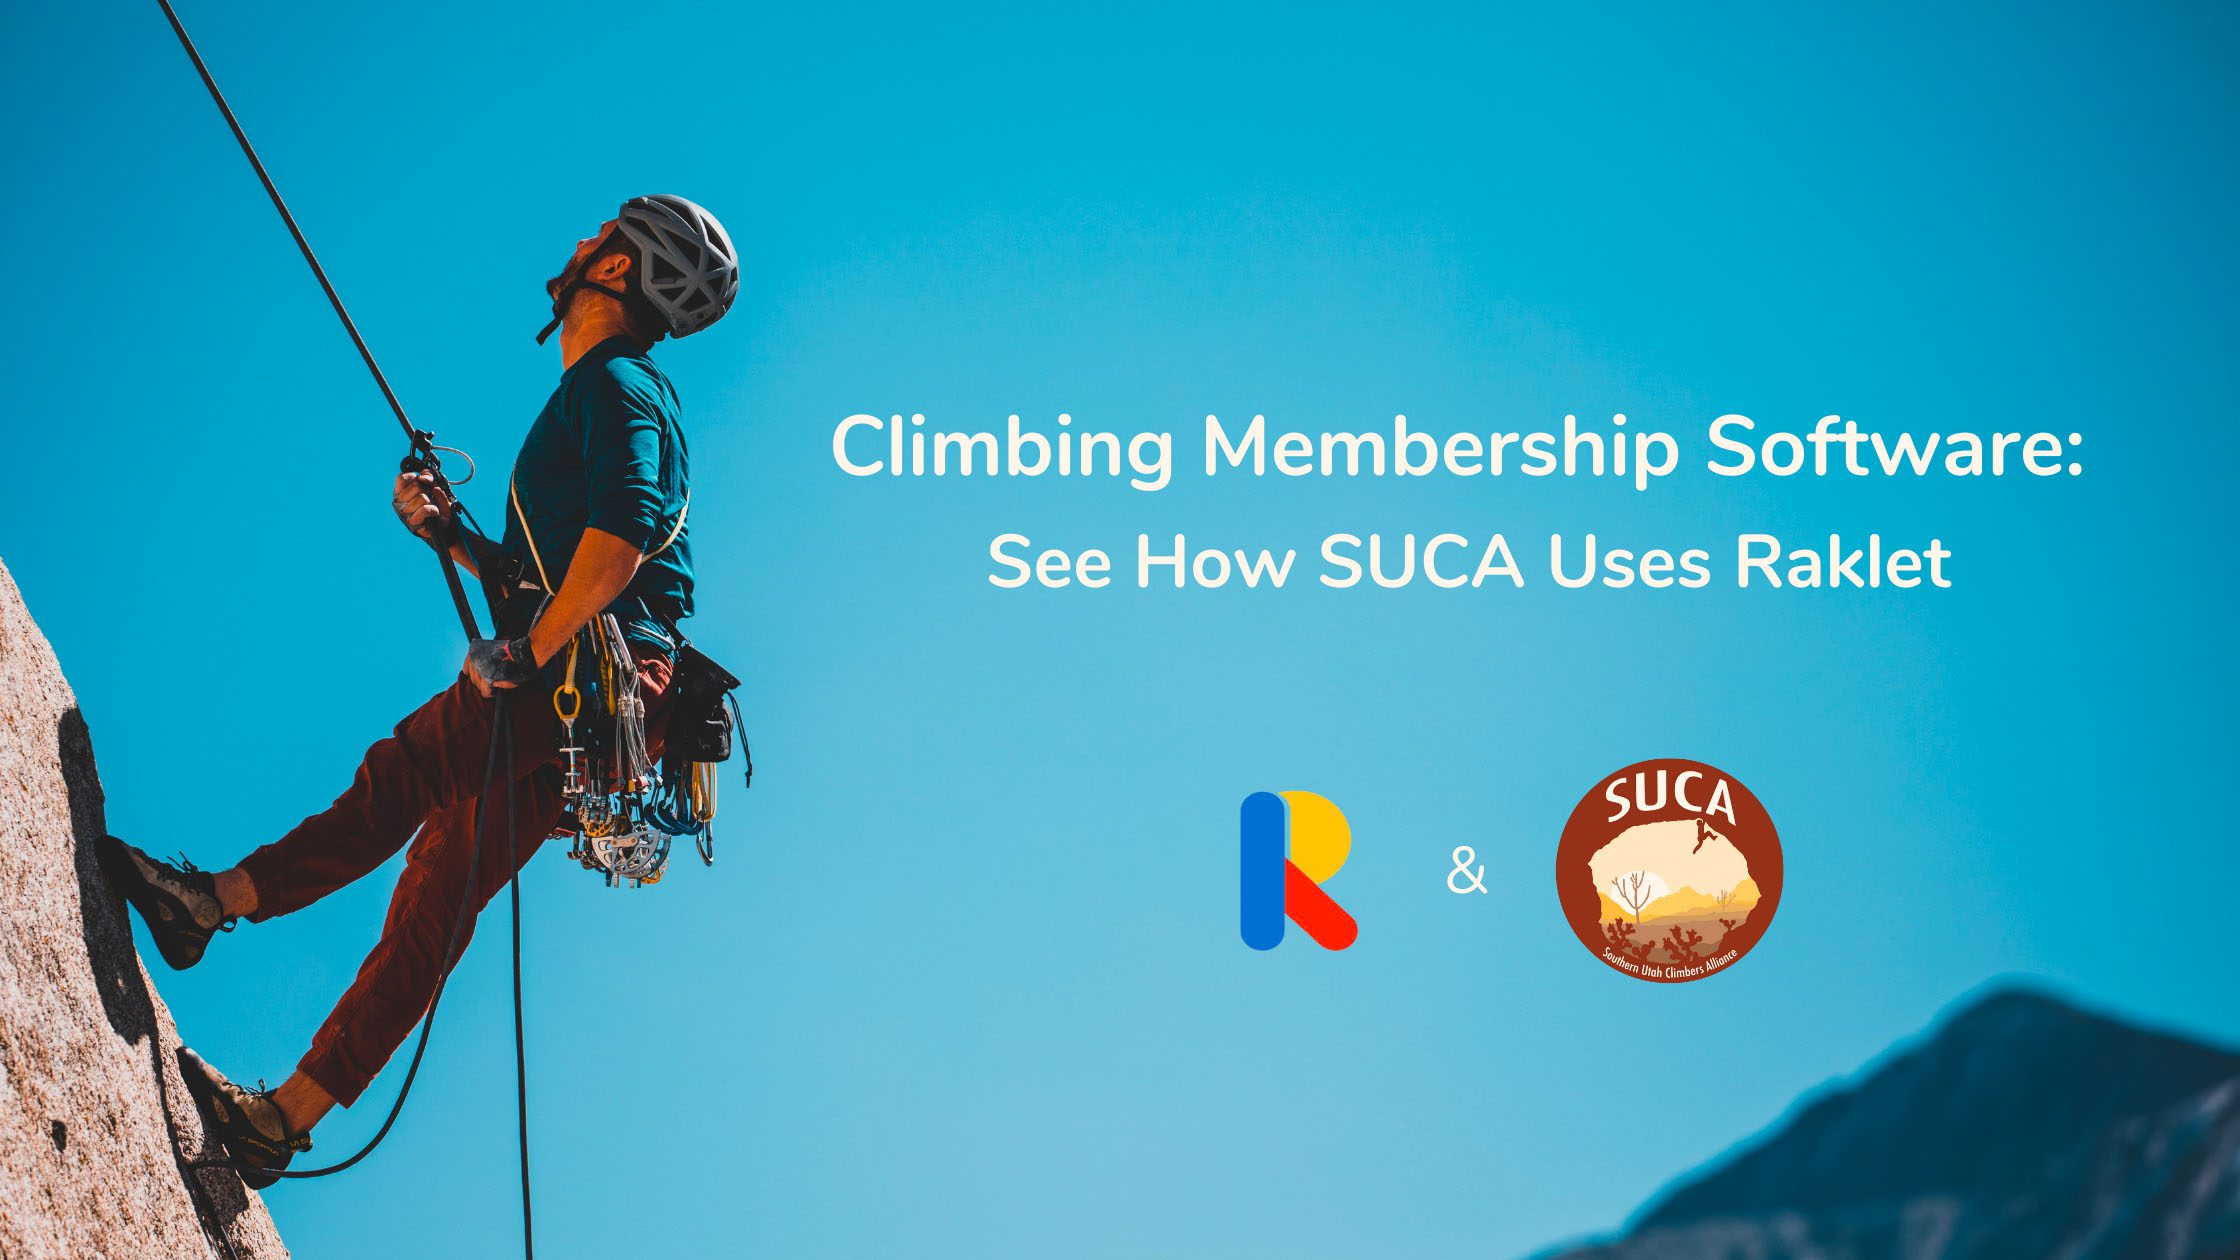 SUCA Climbing Software chooses Raklet